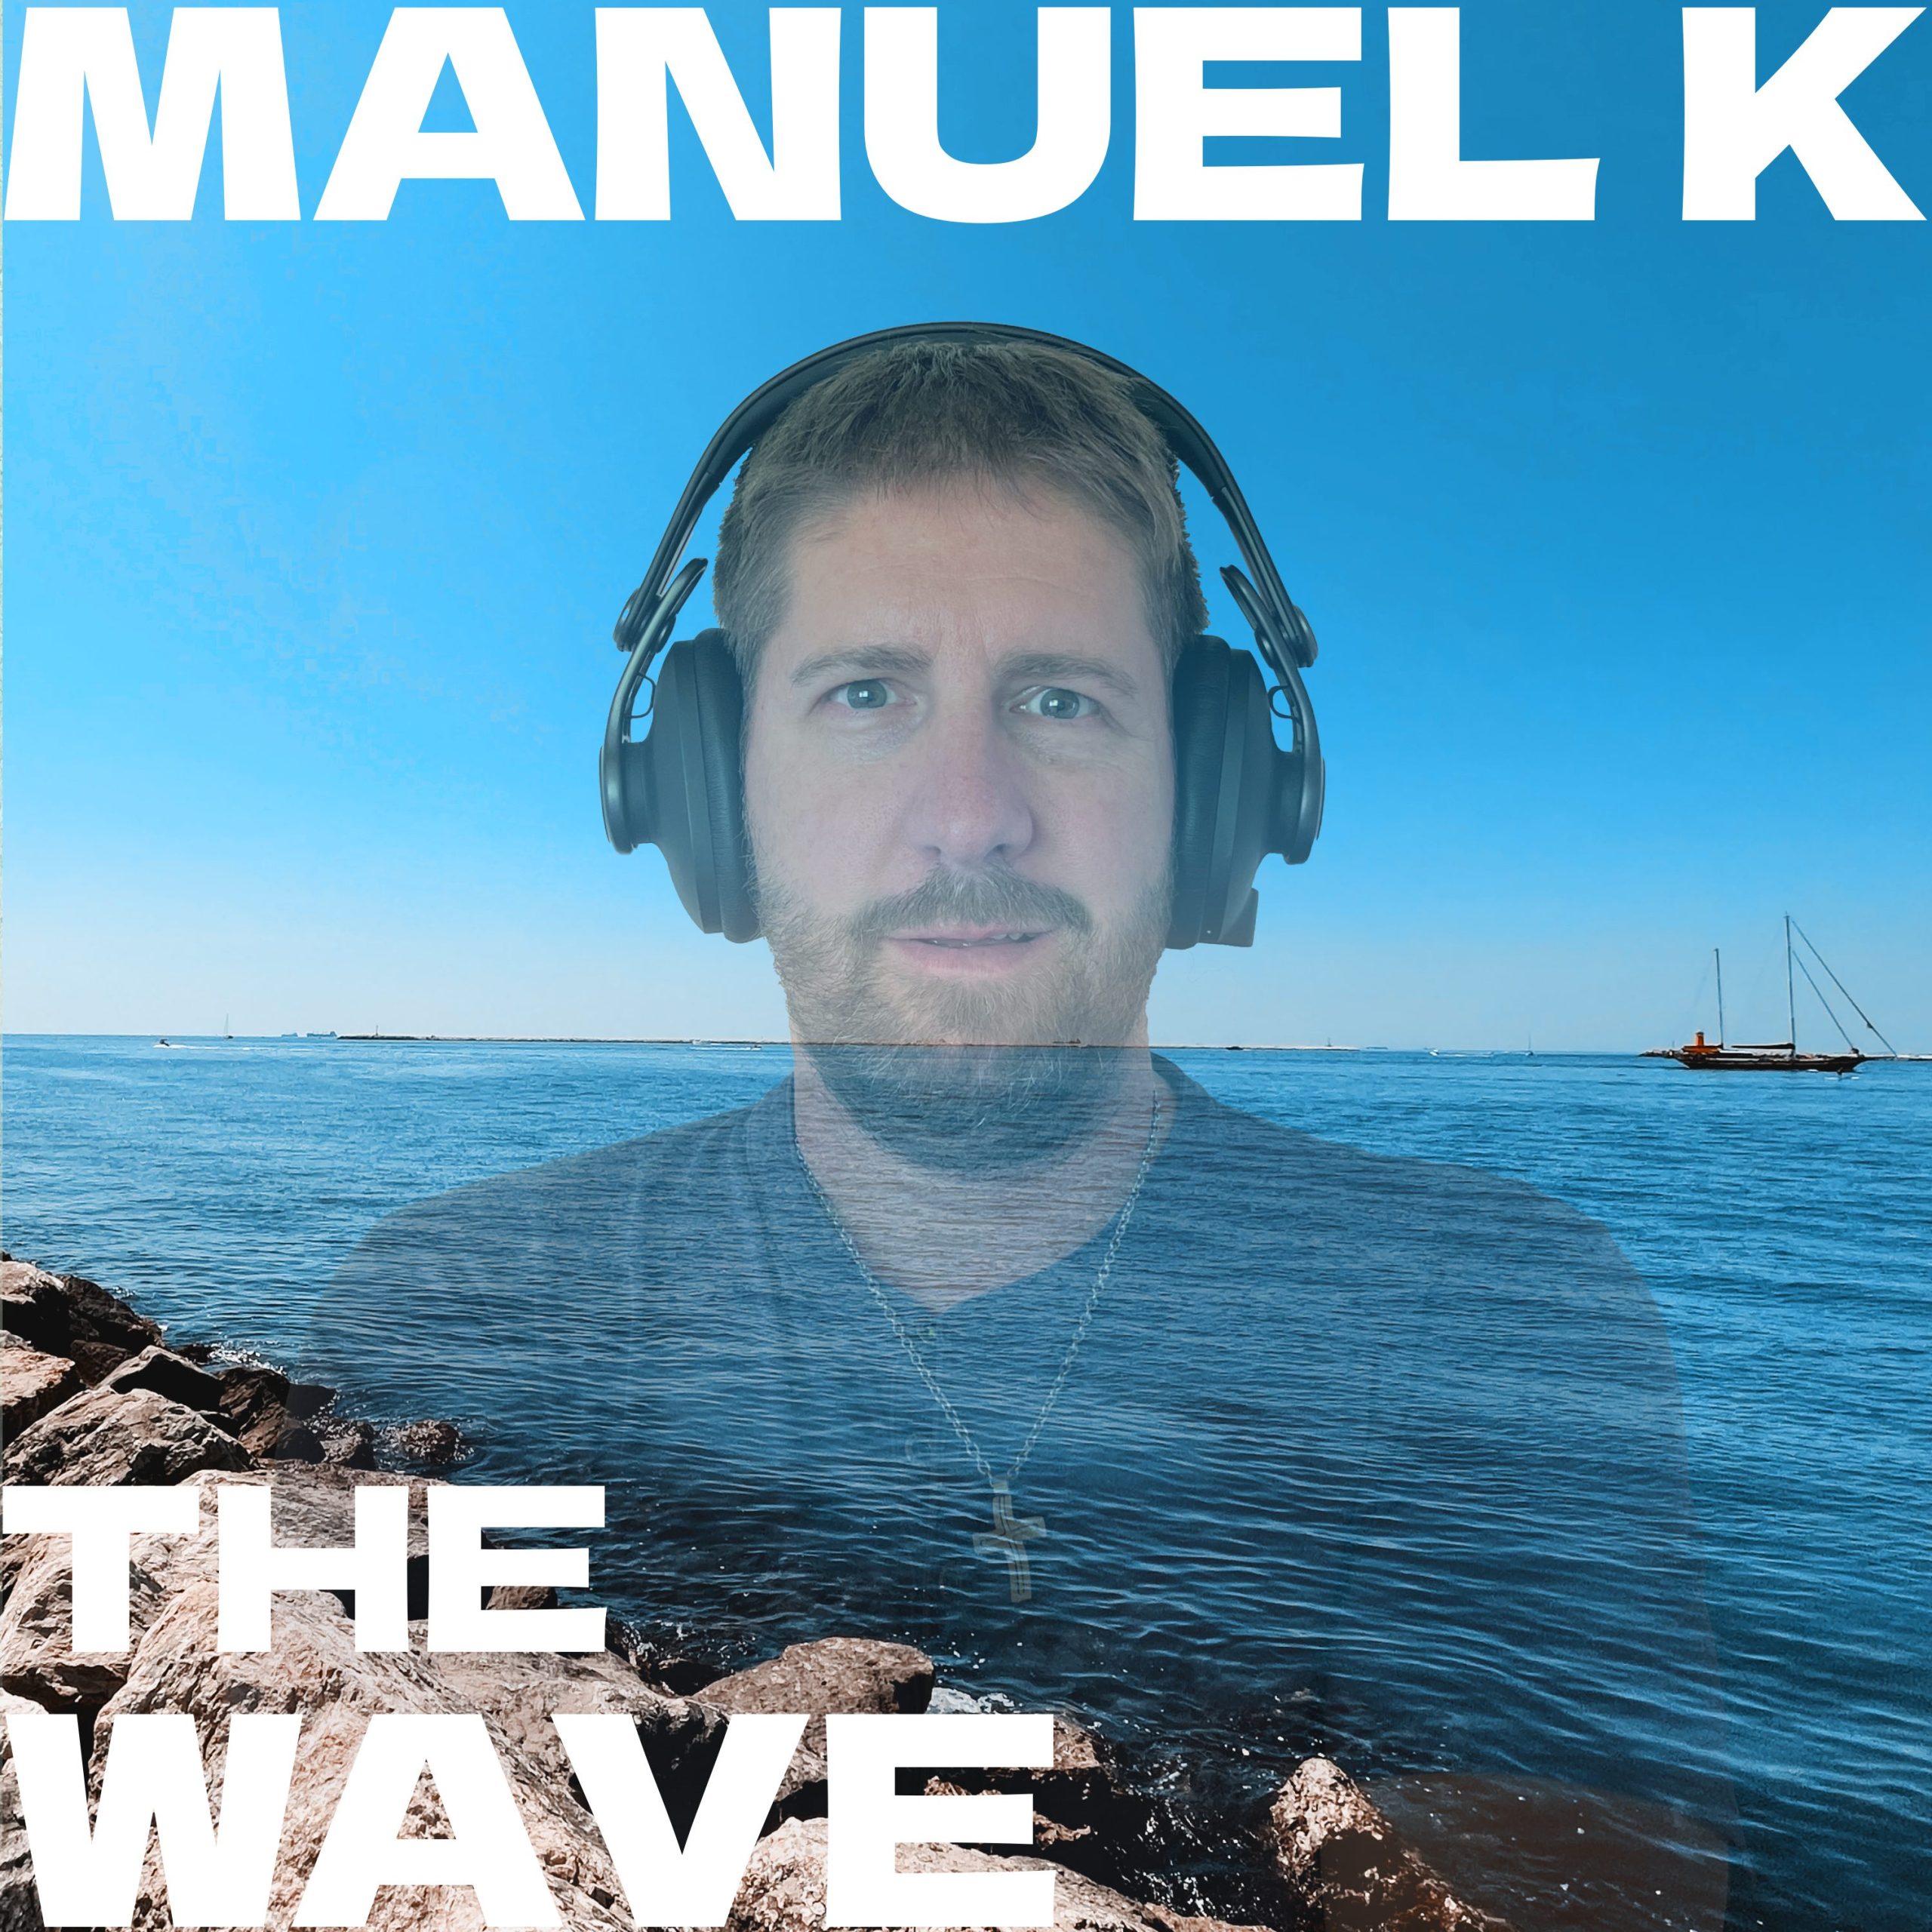 Manuel K